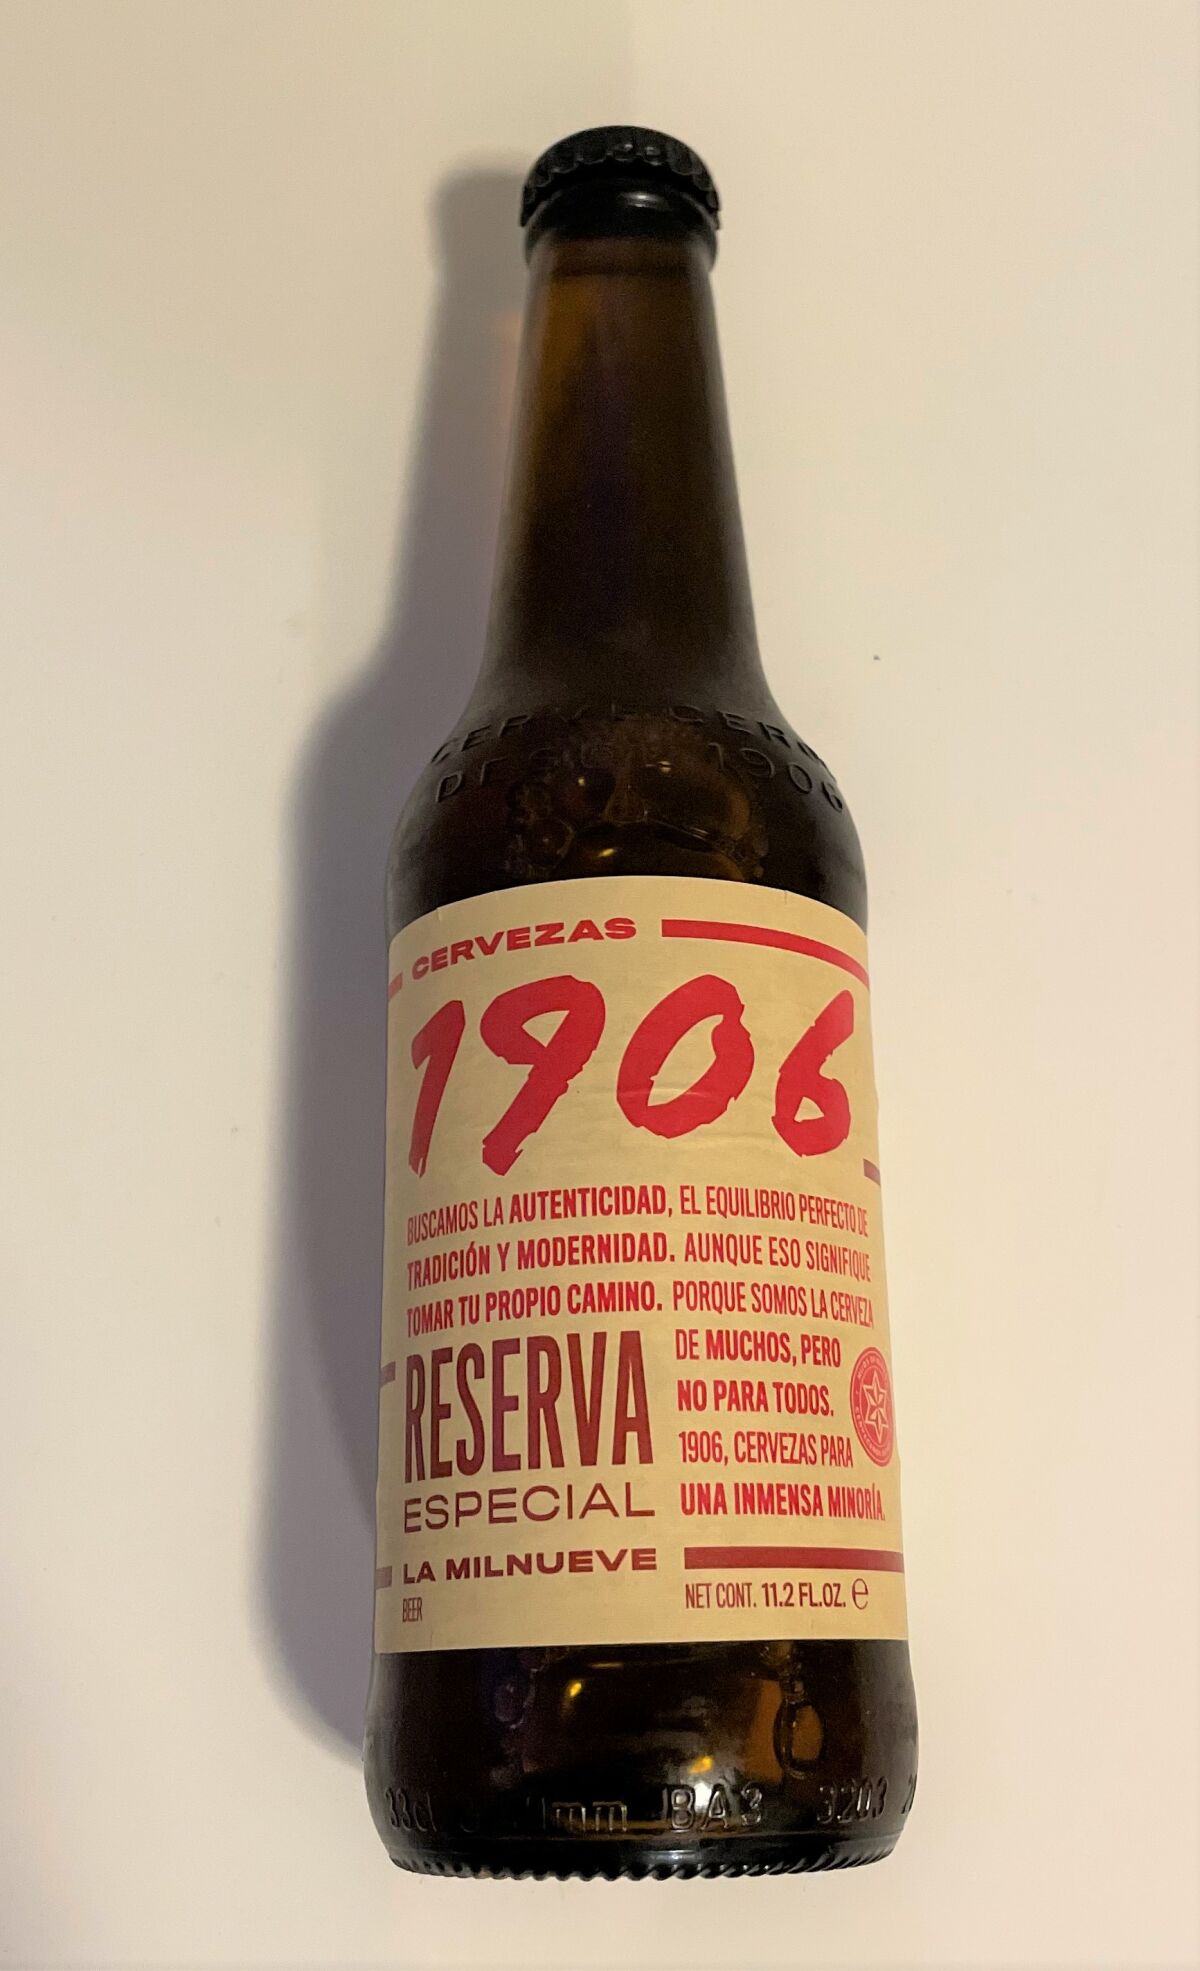 Cerveza Española 1906 Reservas Especial.